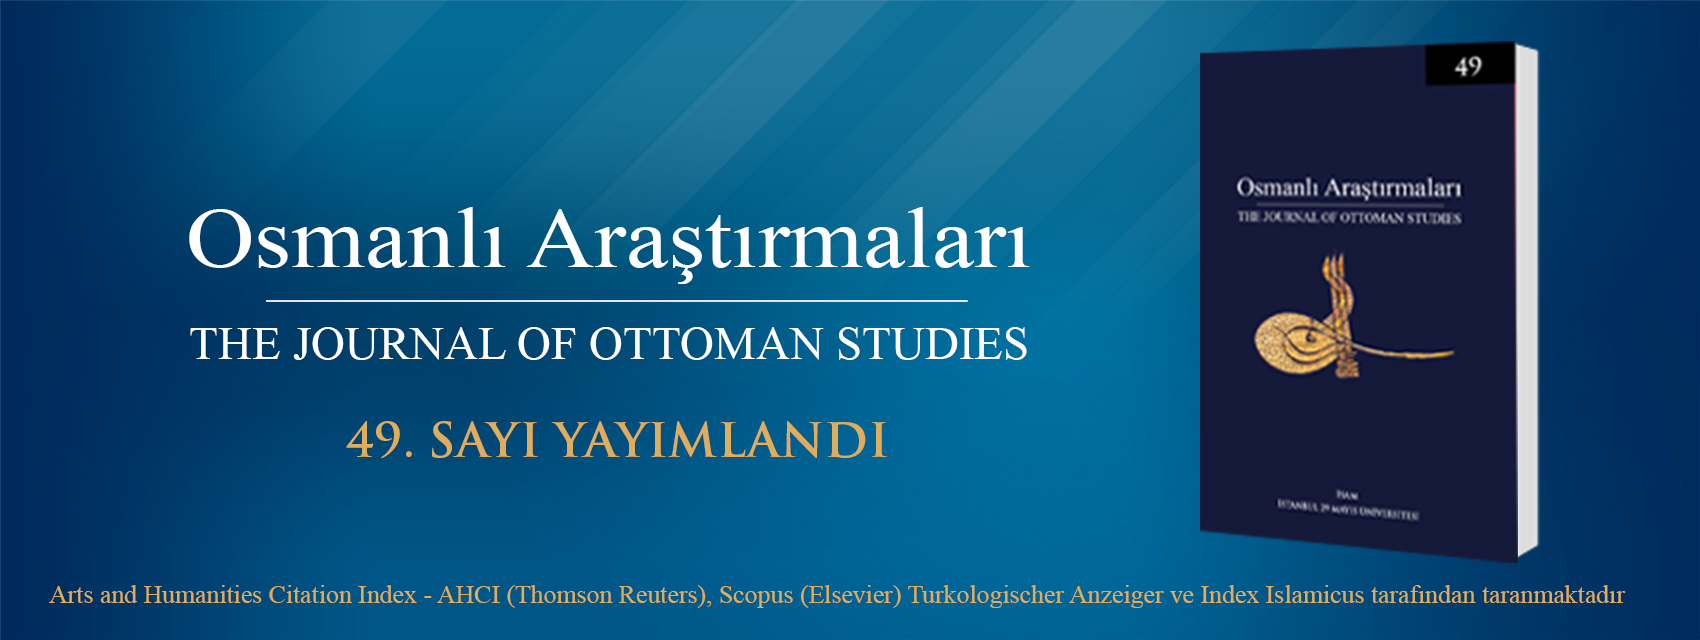 Osmanlı Araştırmaları Dergisi'nin 49. Sayısı Yayımlandı